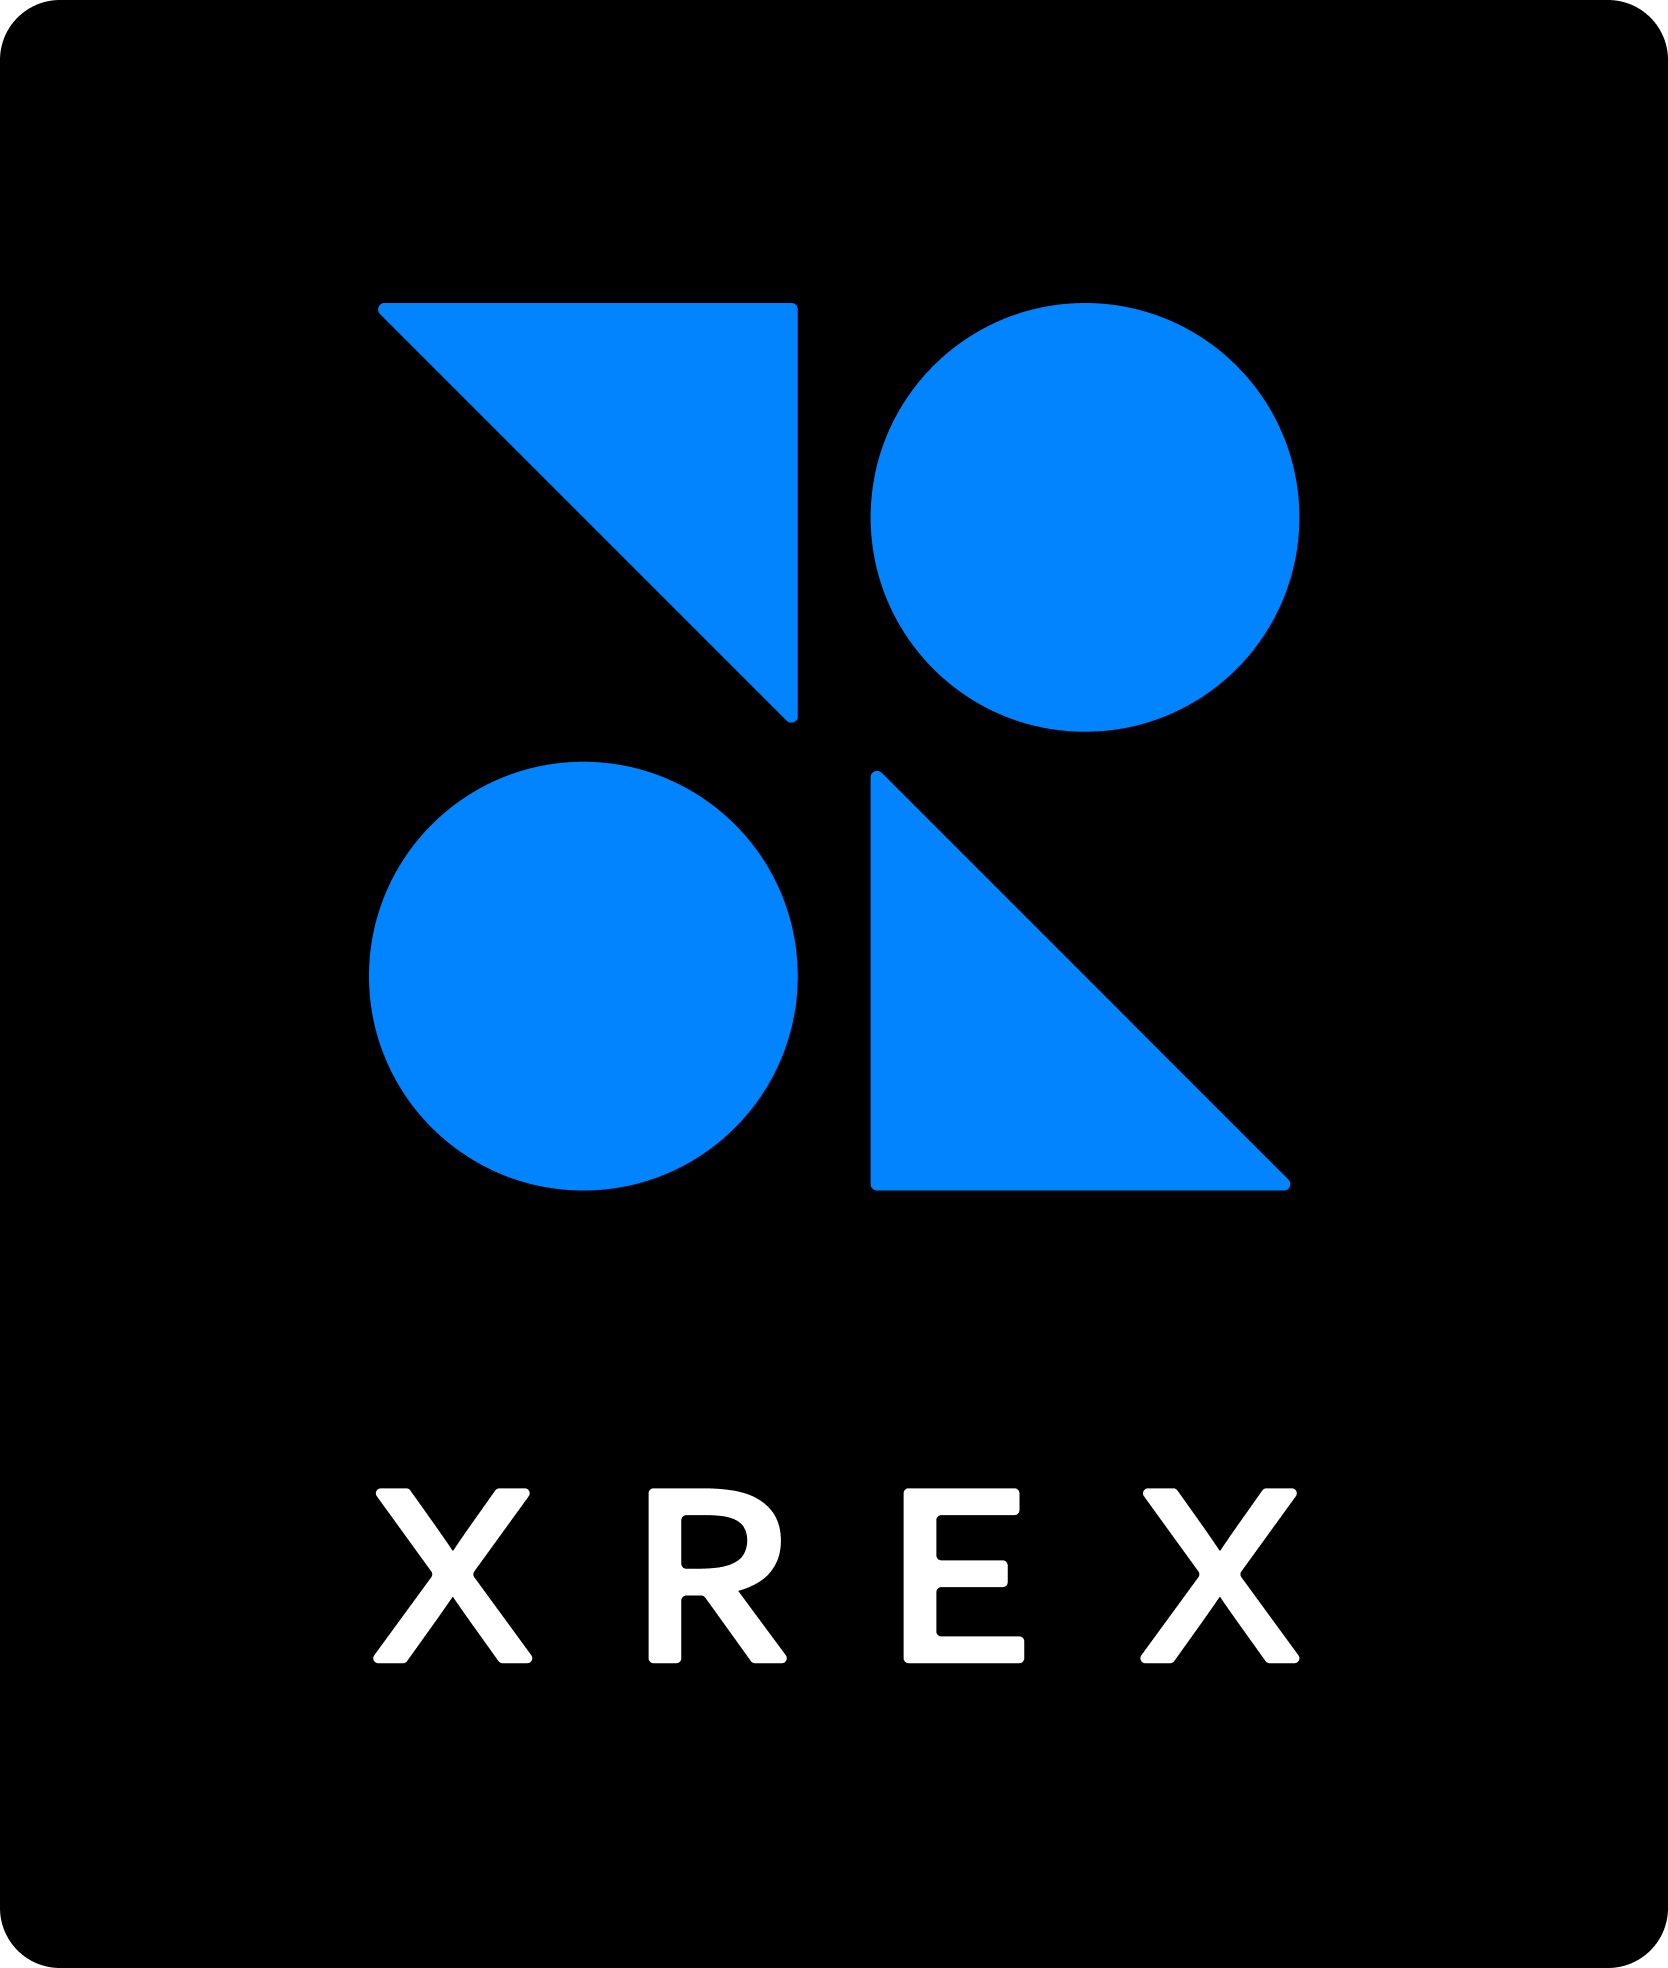 XREX 鏈科股份有限公司